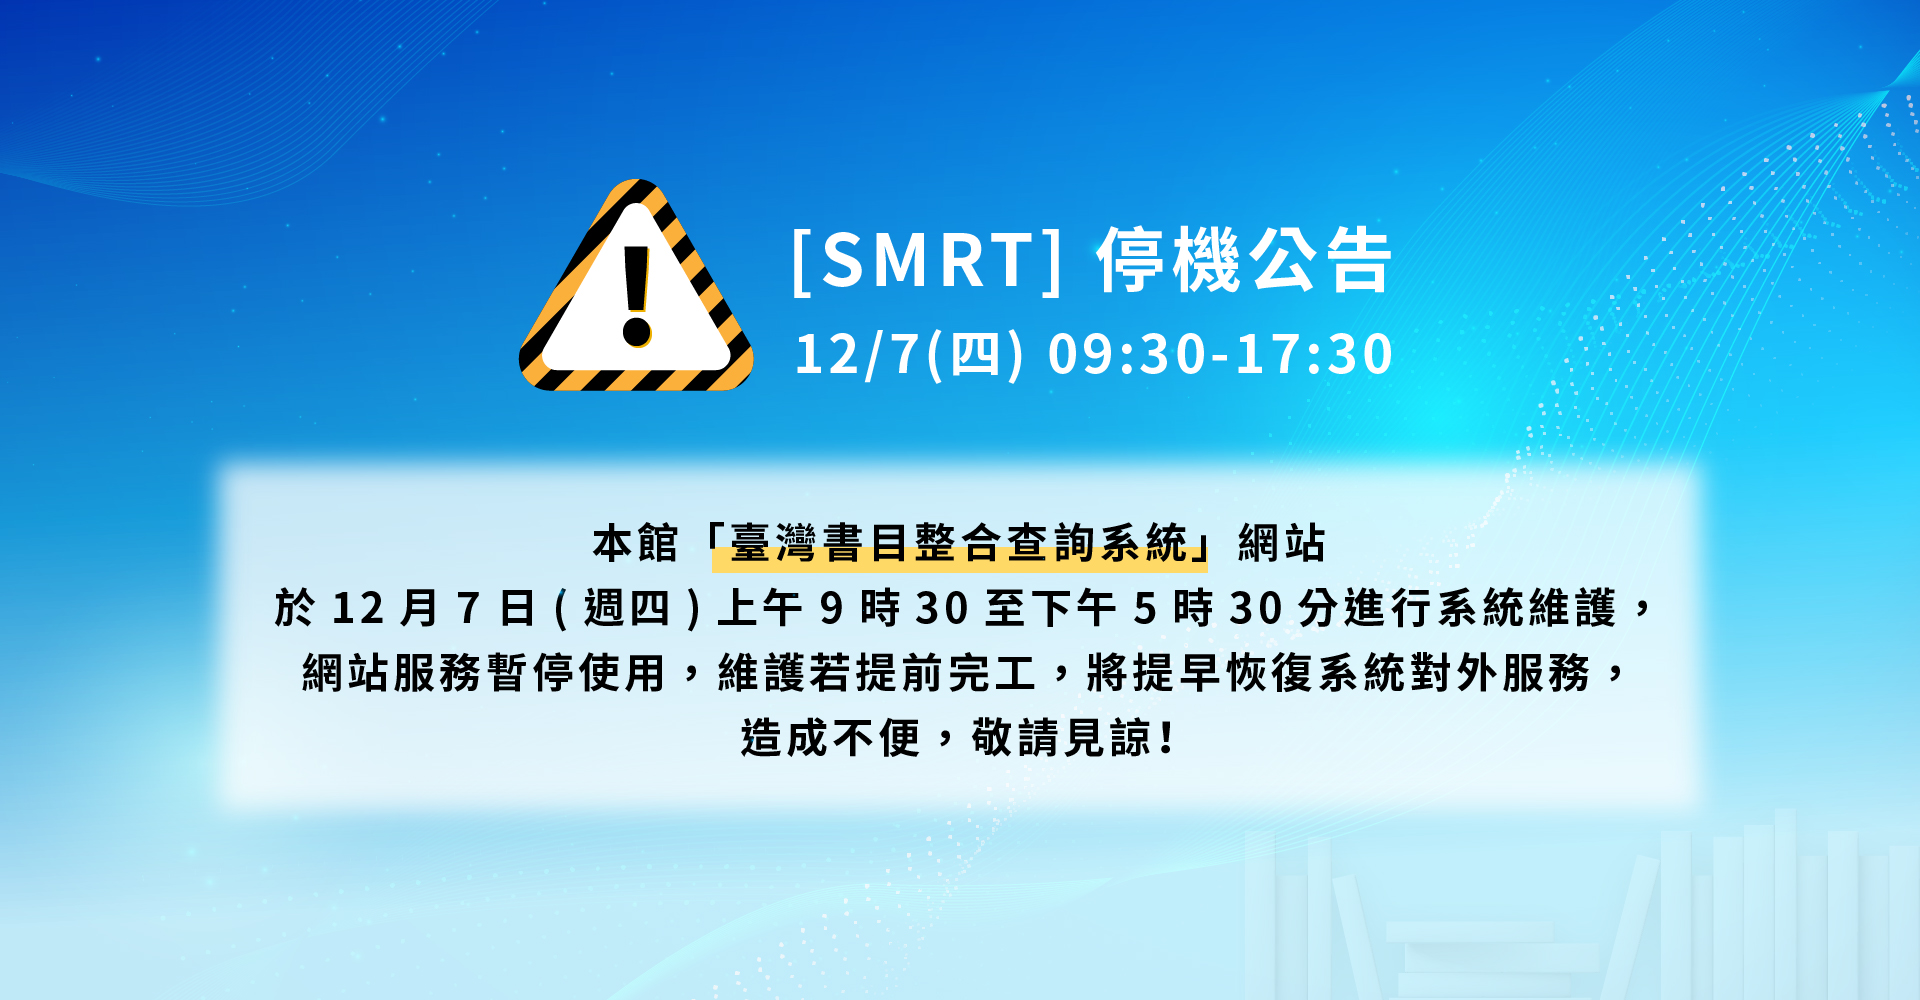 [停機公告]臺灣書目整合查詢系統及所屬網站於12月7日(星期四)進行系統維護